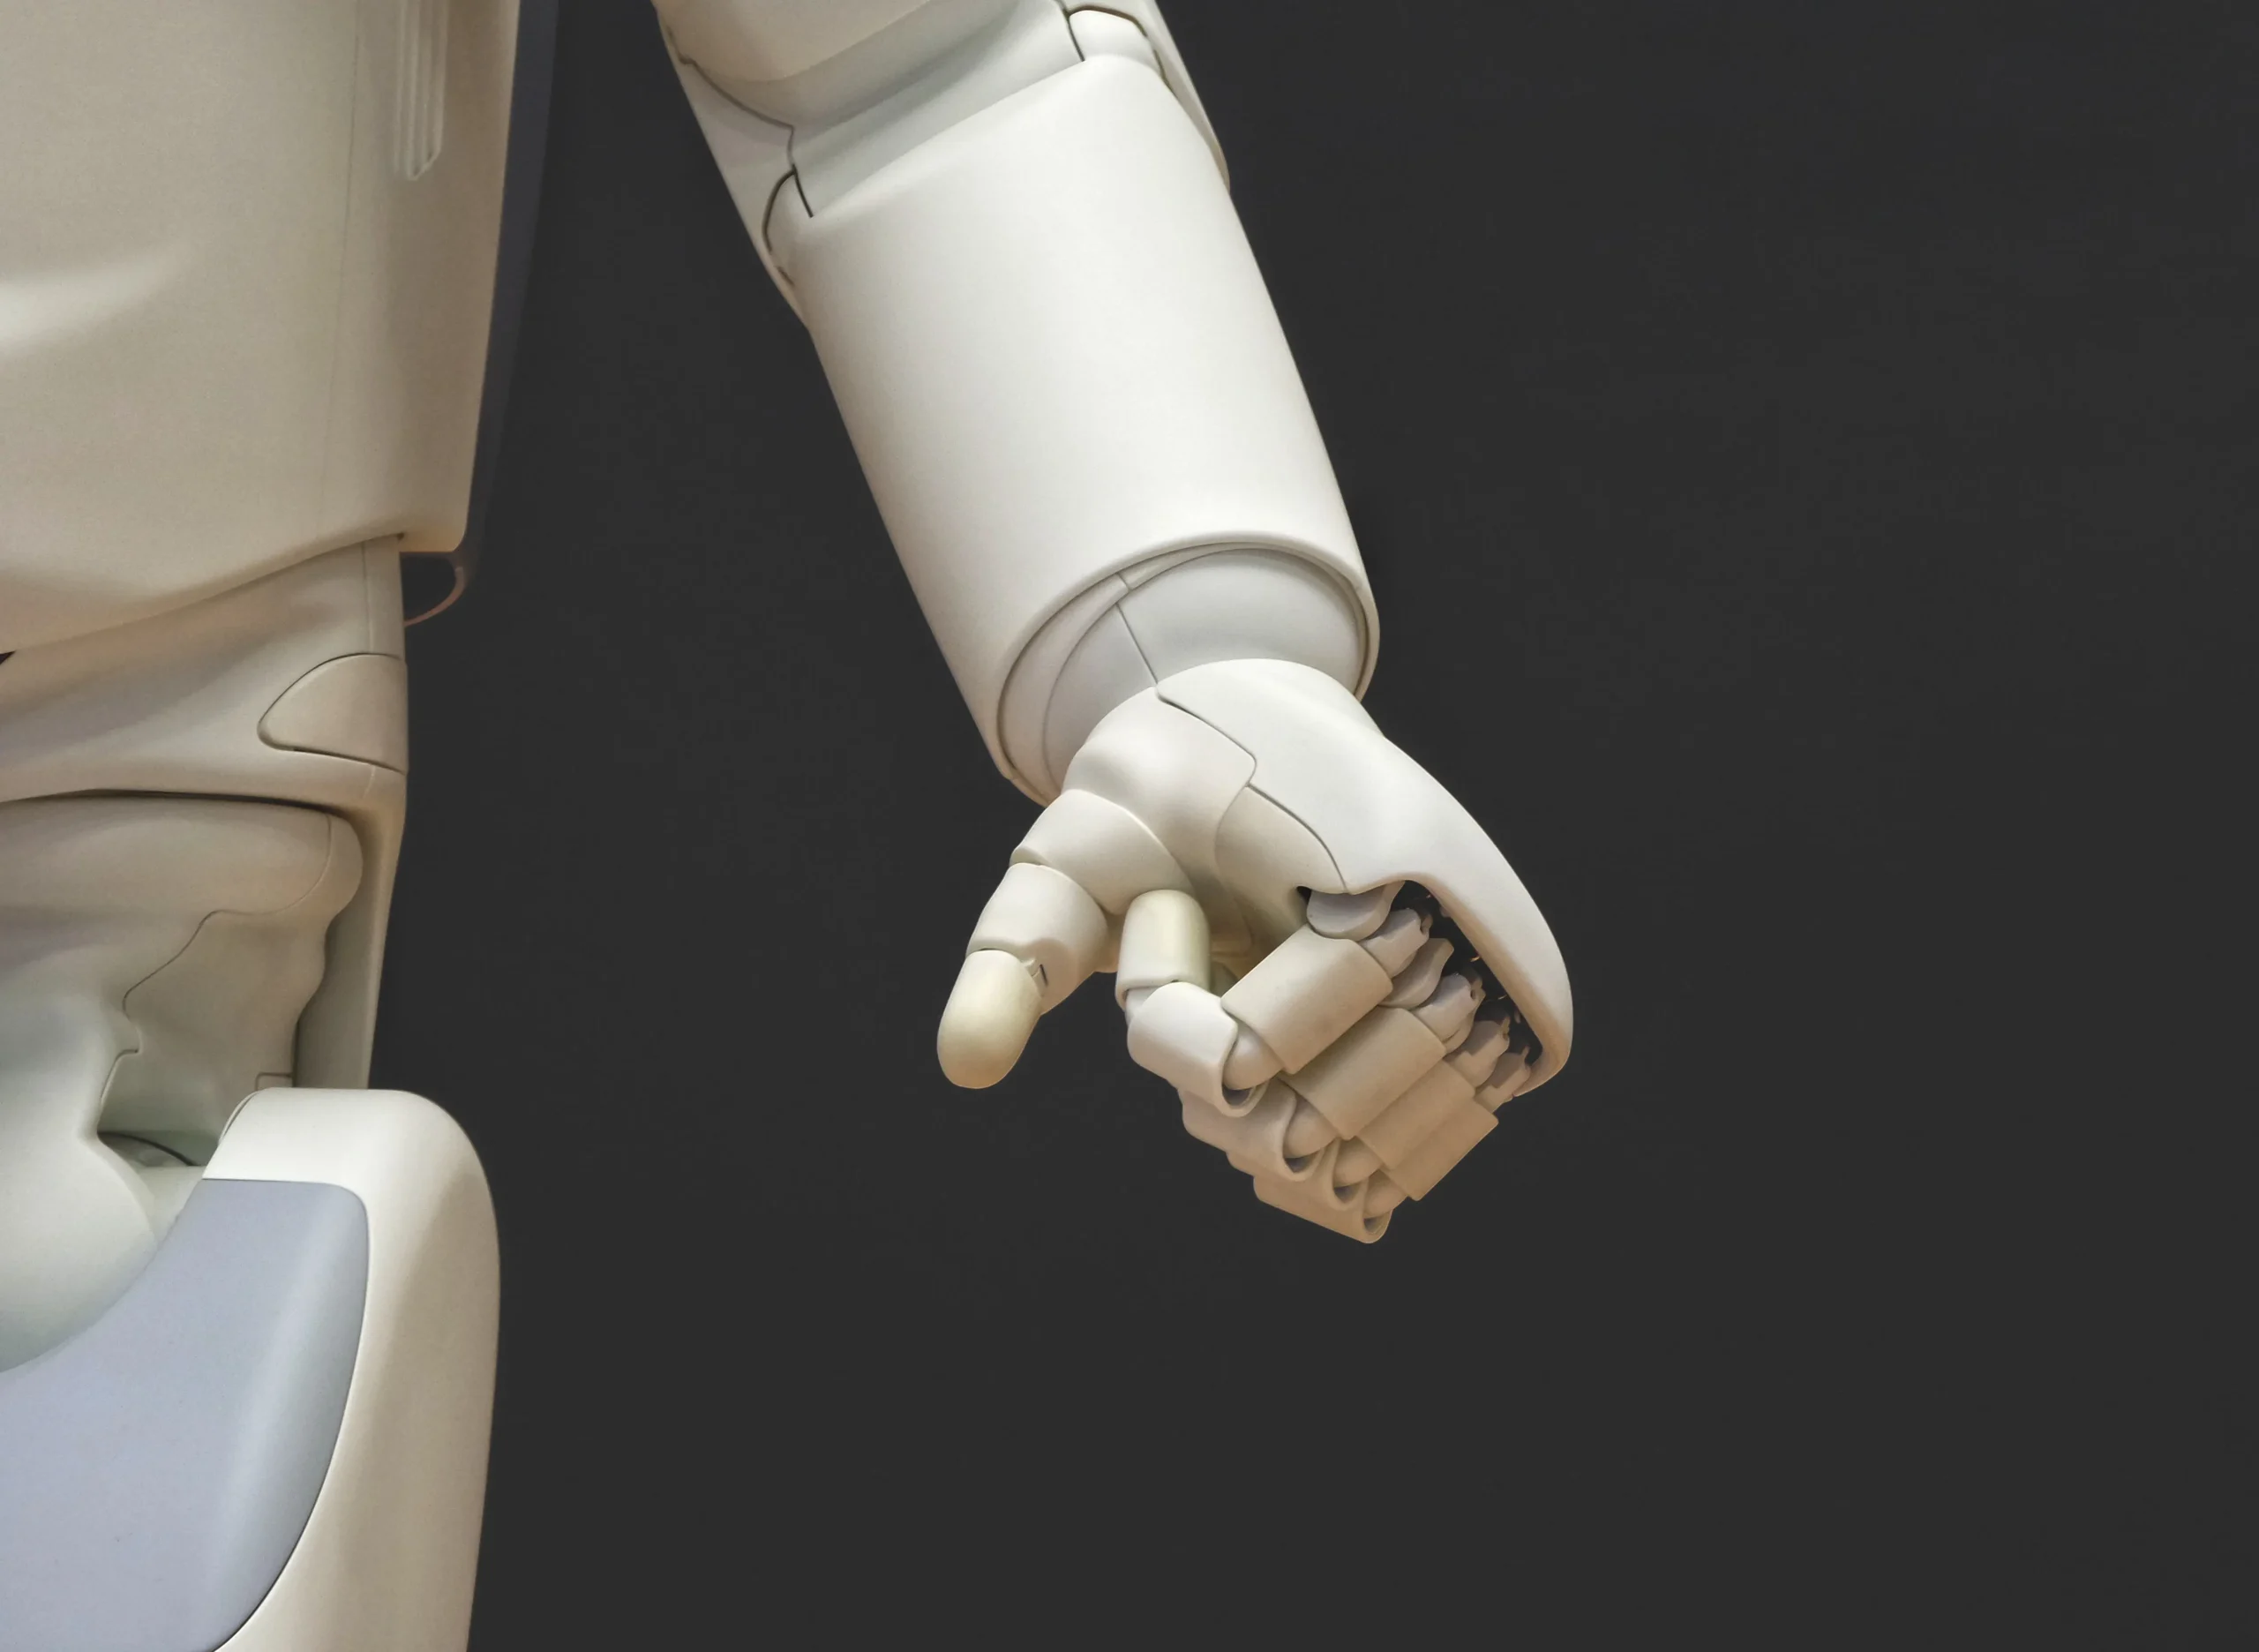 robotics en auditoria - Qué papel juegan los robots en los procesos de automatización